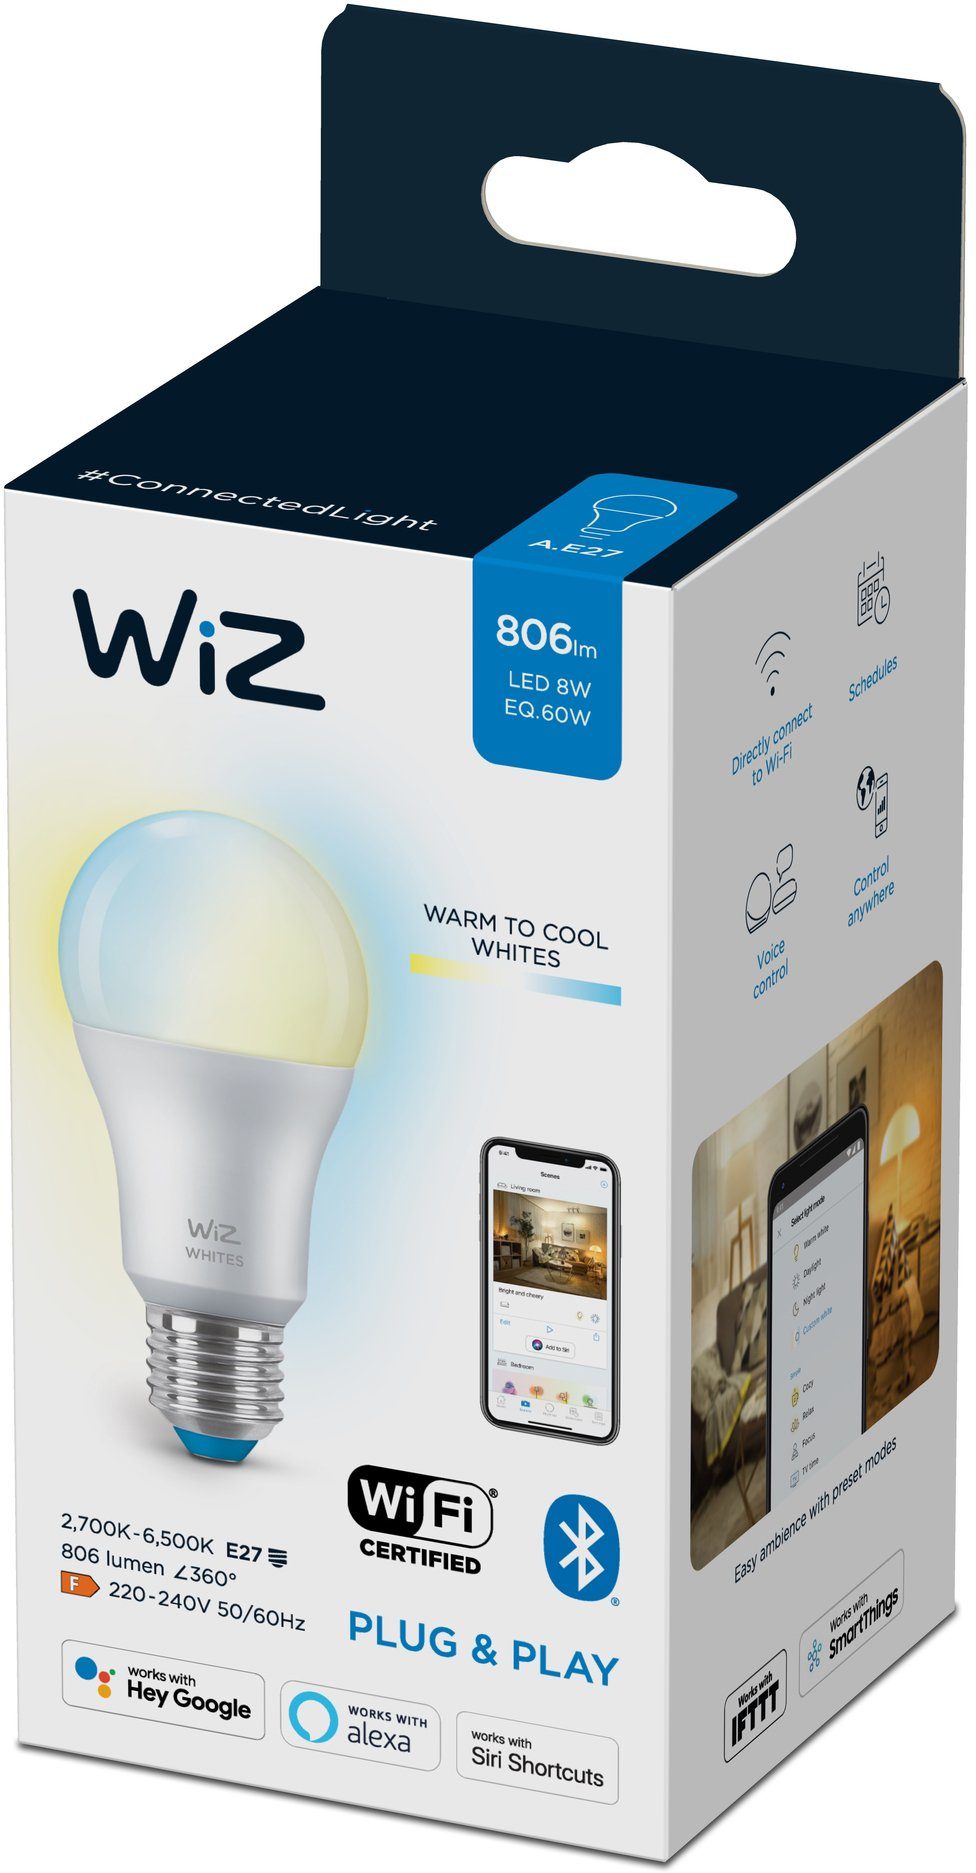 WiZ LED-Leuchtmittel White 60W E27 matt White Warmweiß, Beleuchtung E27, mit Kreieren Sie St., Einzelpack, Wiz Tunable Tunable 1 Standardform smarte 8W LED Lampen